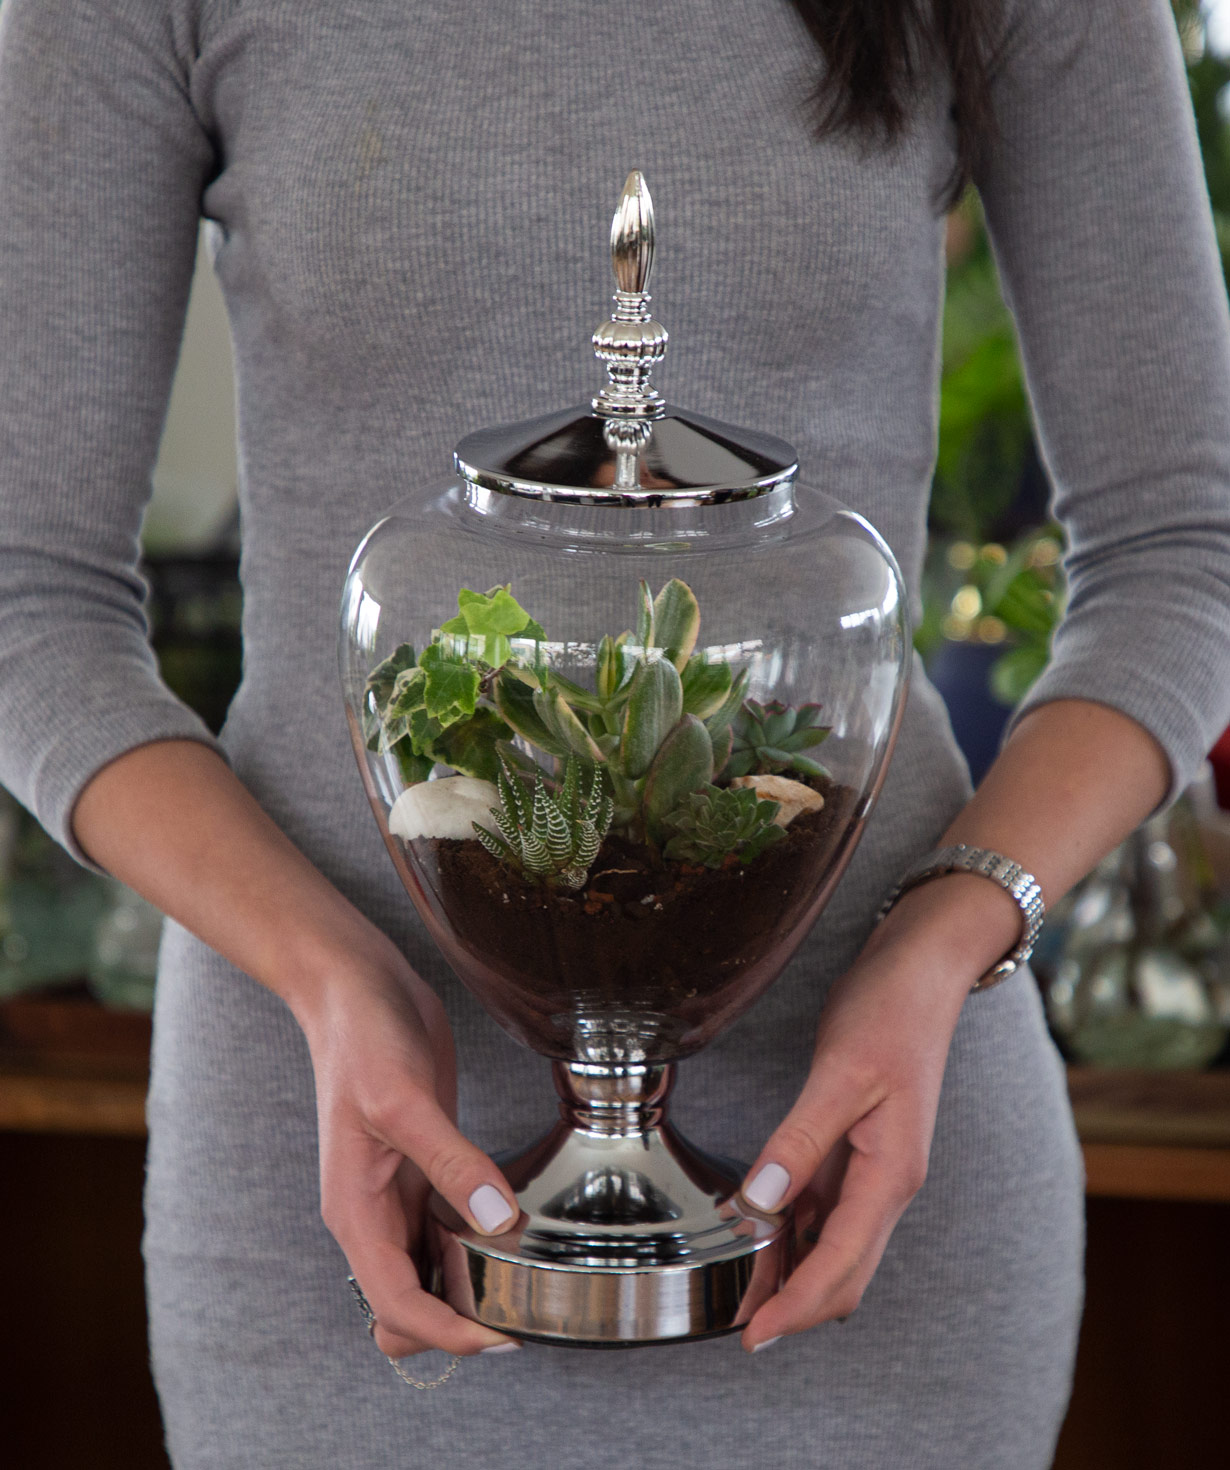 Florarium `Goblet` with succulents